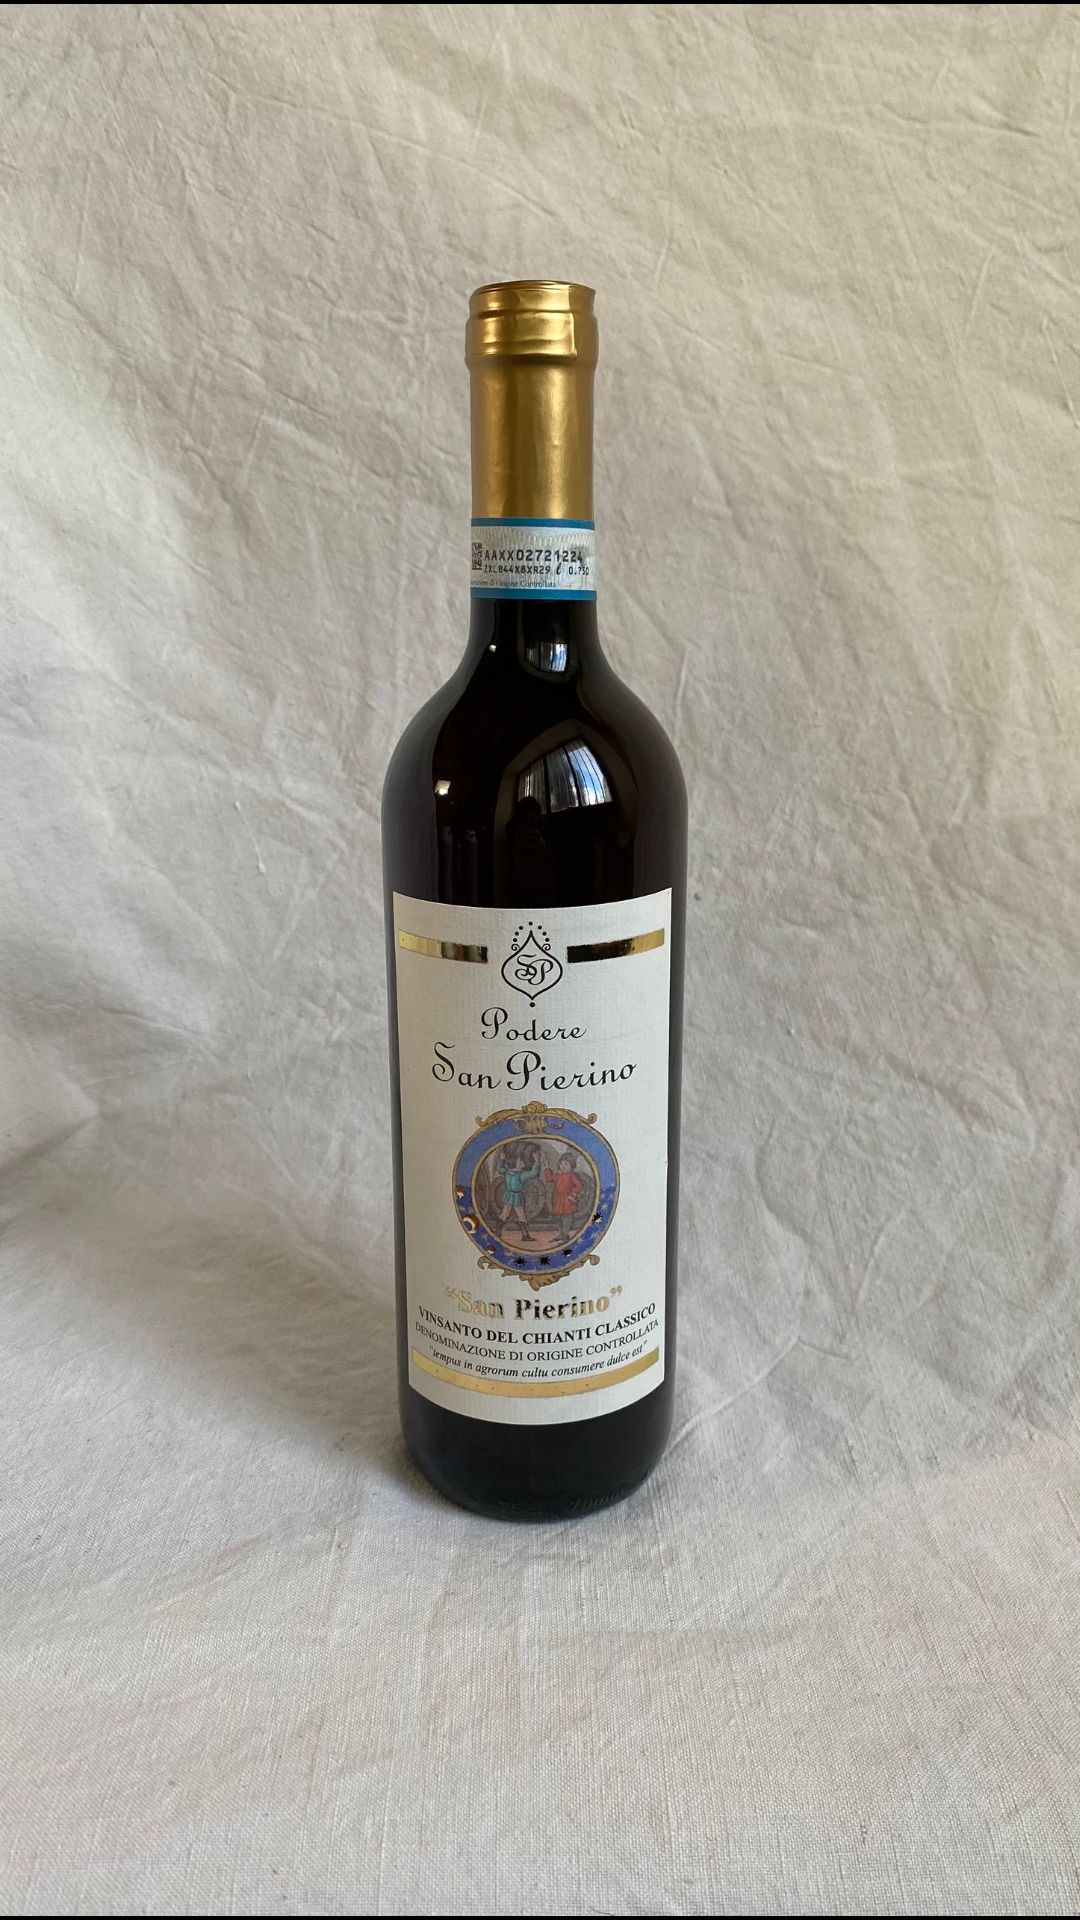 Bottiglia di vino rosso I.G.T. Toscana Magolo